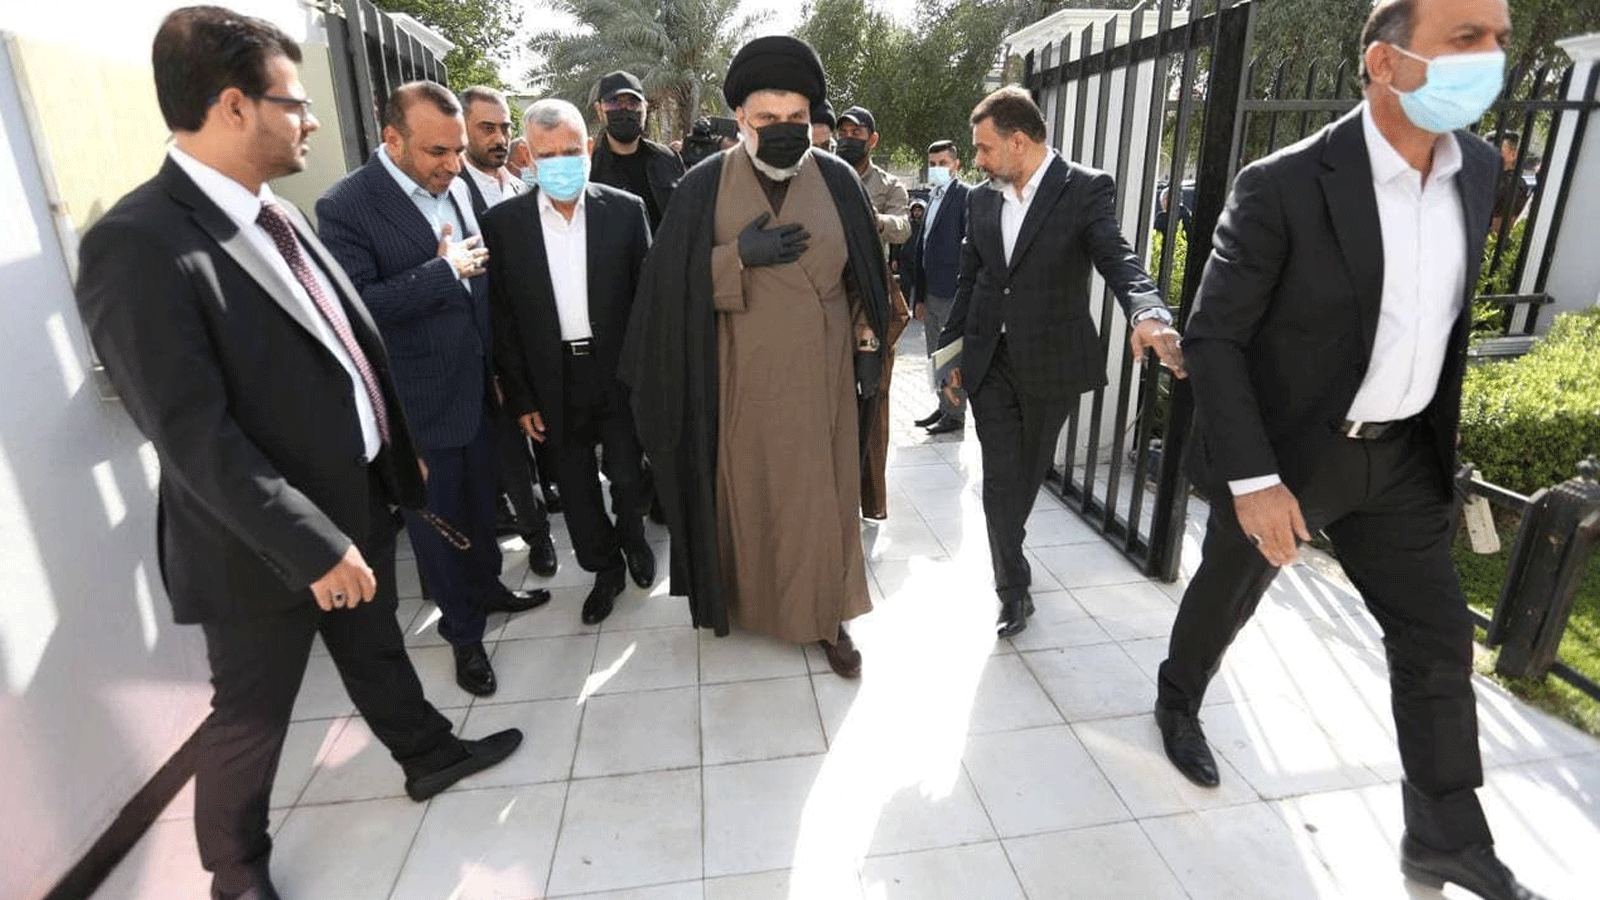 الصدر لدى دخوله الى منزل العامري للاجتماع مع قادة الإطار الشيعي في بغداد في 2 كانون الأول/ ديسمبر 2021 (تويتر)